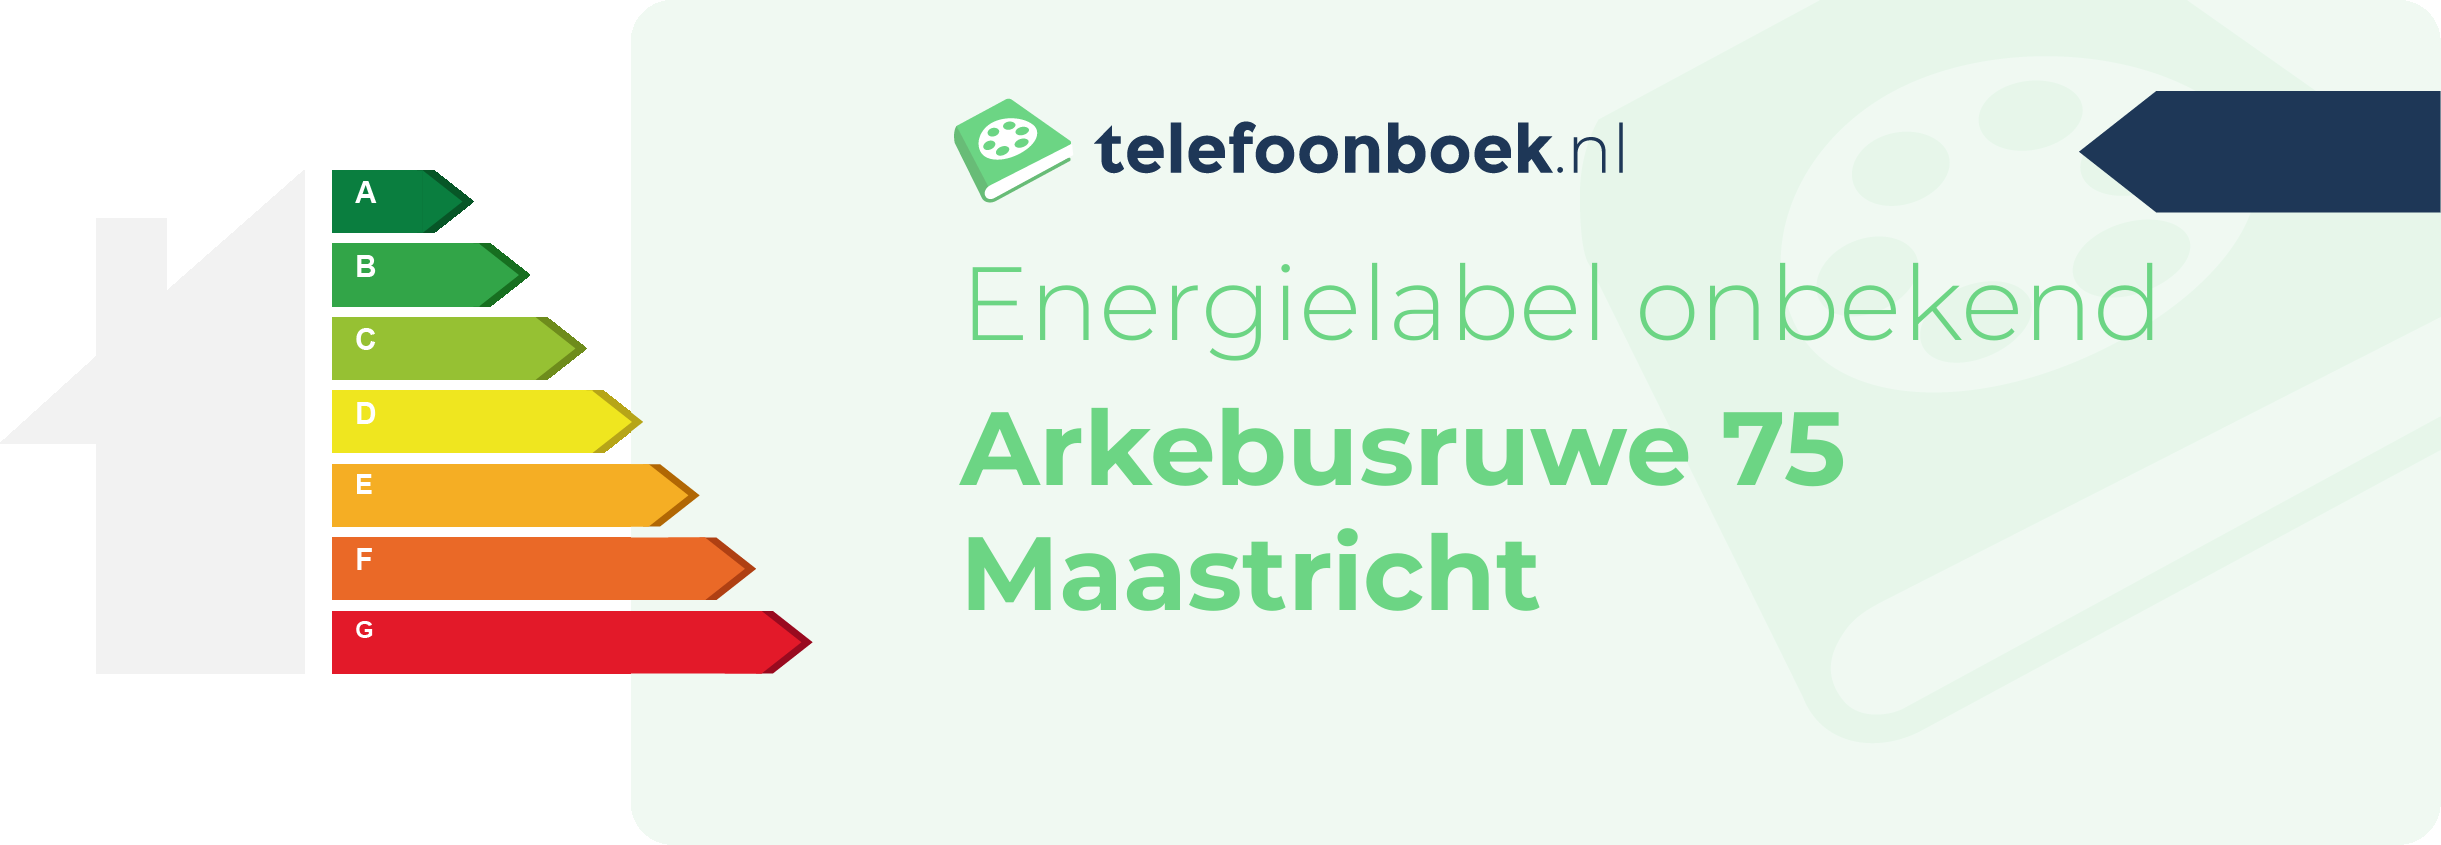 Energielabel Arkebusruwe 75 Maastricht